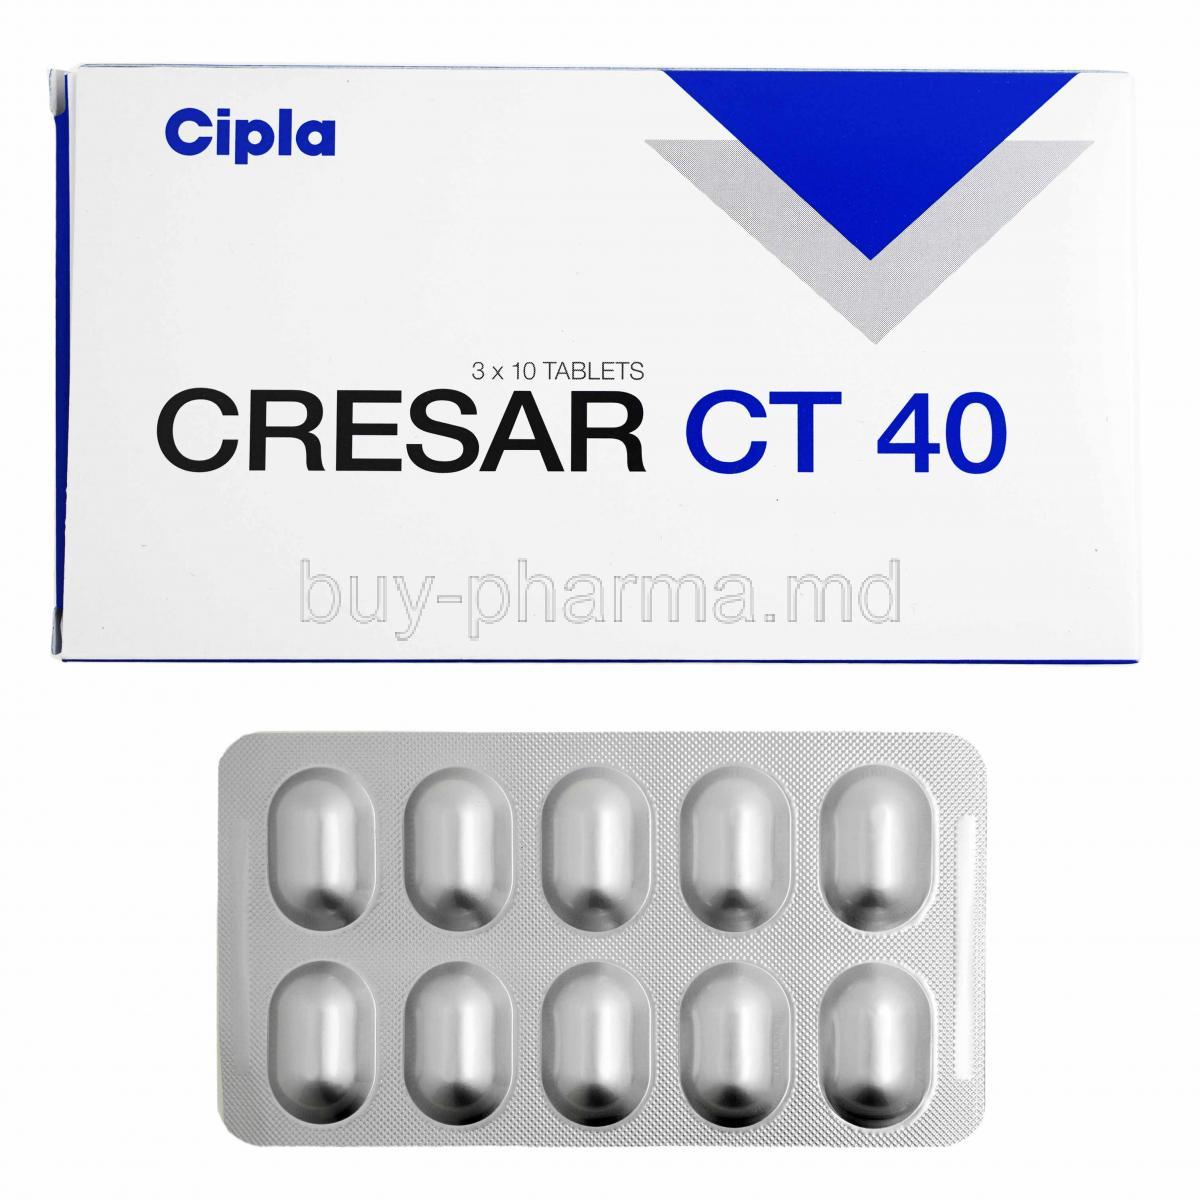 Cresar CT, Telmisartan 40mg and Chlorthalidone 12.5mg box and tablets